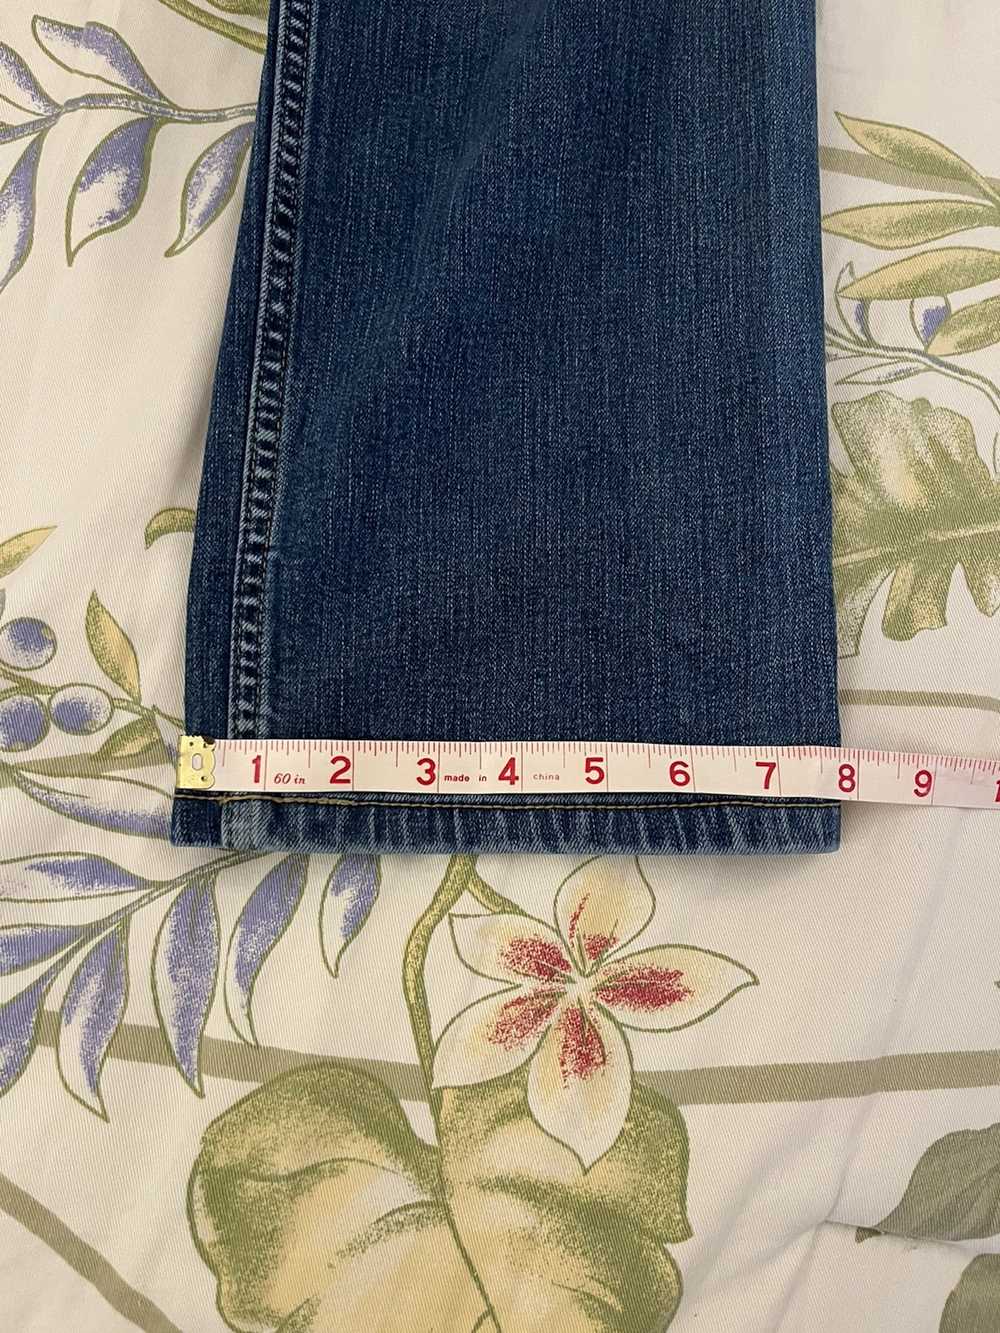 Carhartt × Streetwear Carhartt work style jeans - image 8